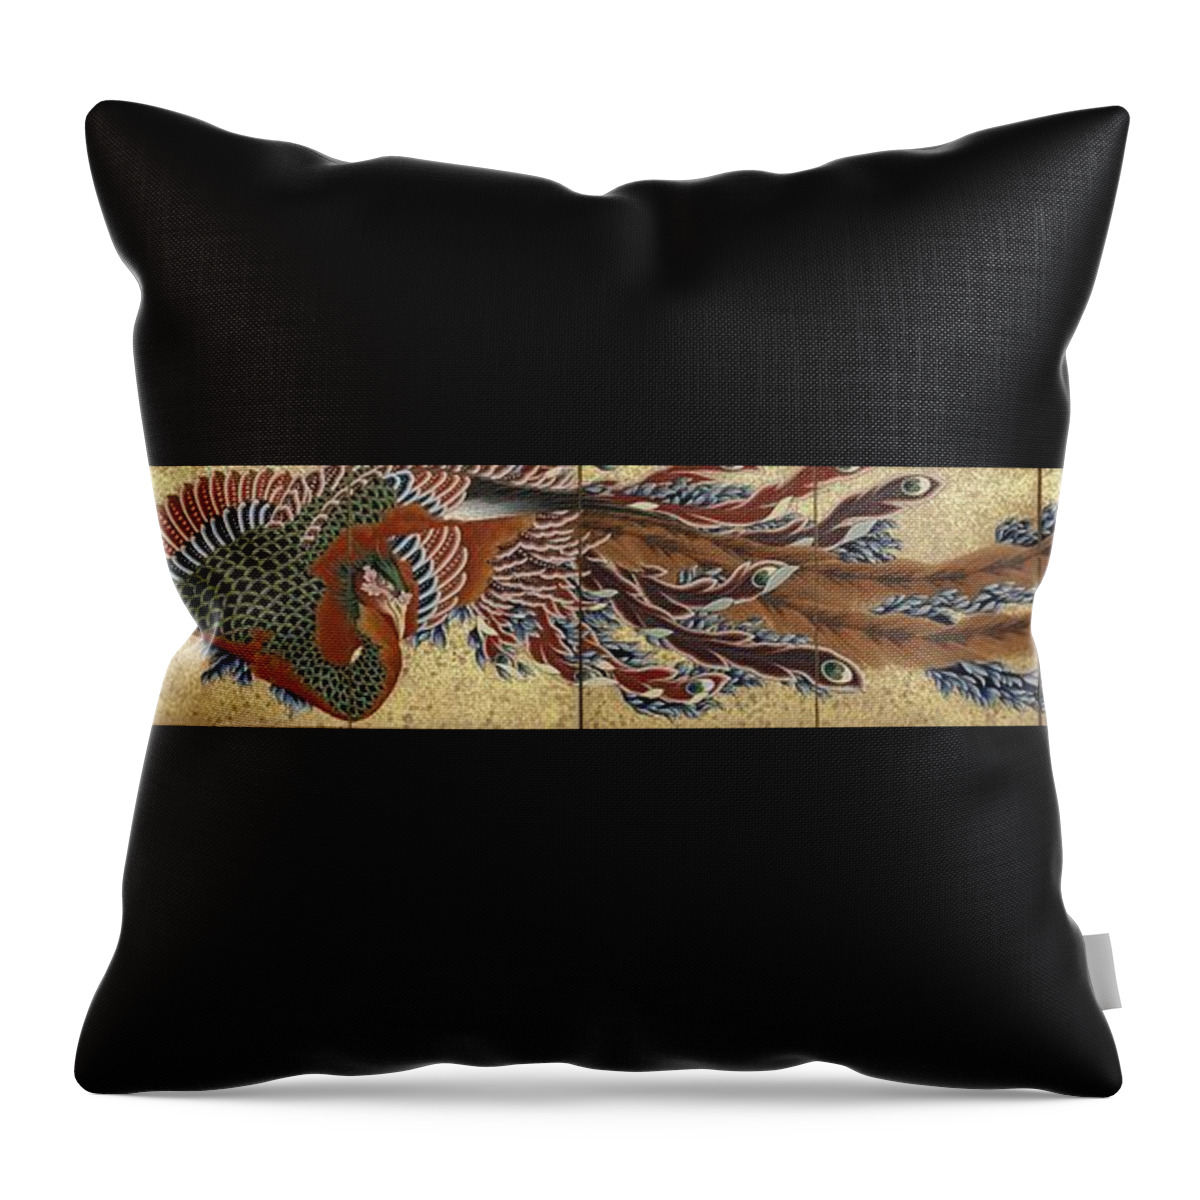 Katsushika Hokusai Throw Pillow featuring the painting Phoenix #3 by Katsushika Hokusai